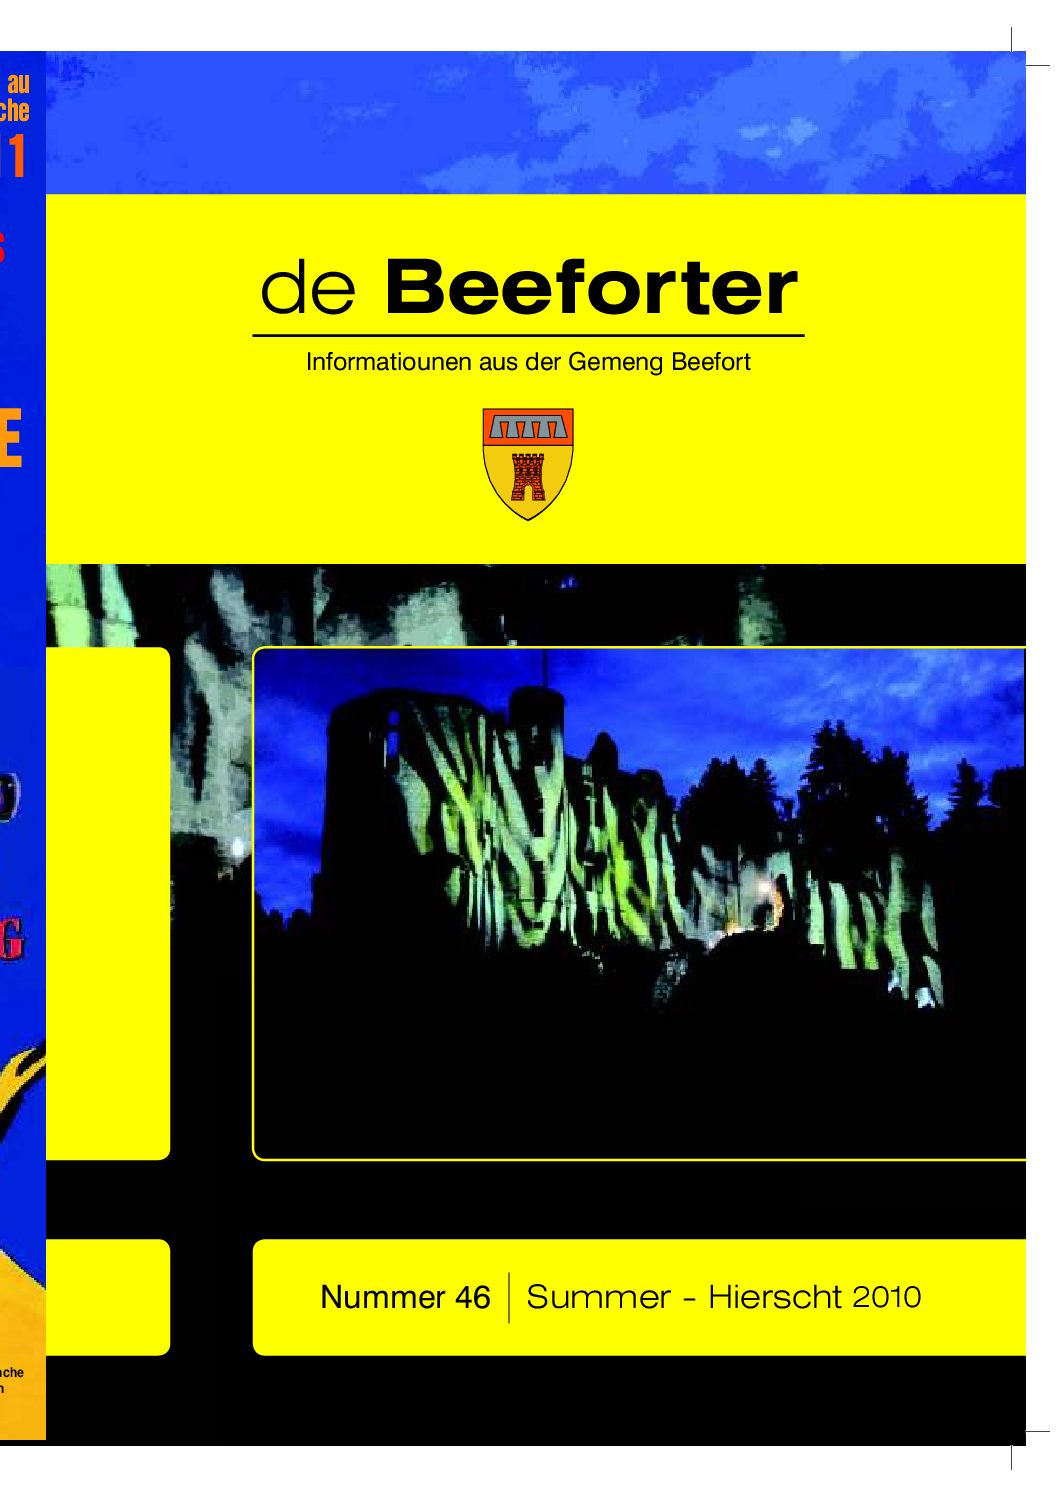 De Beeforter 46